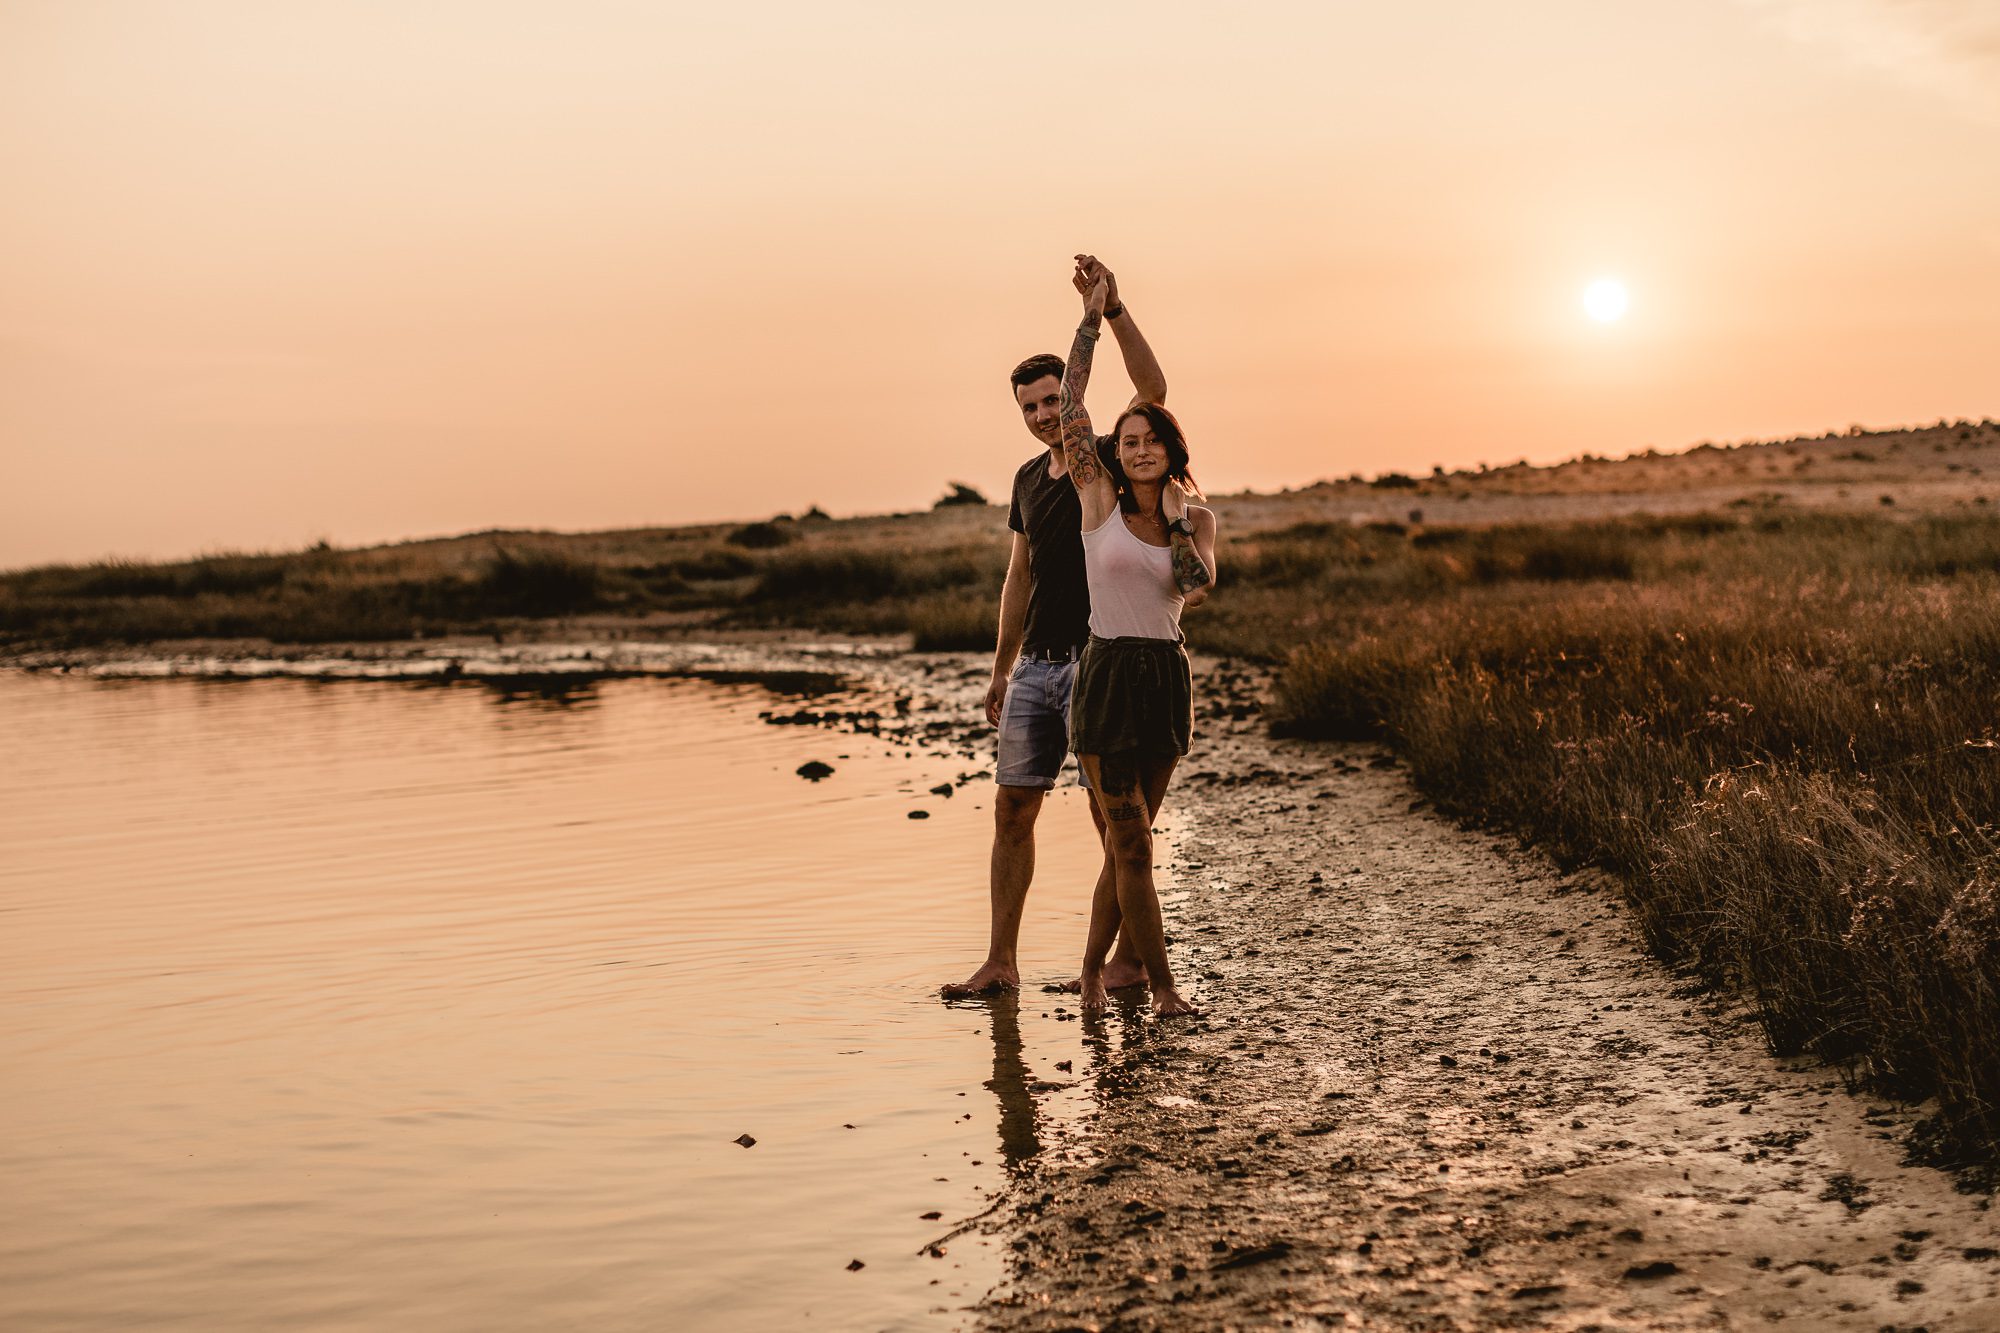 PÄRCHEN tanzend im Sonnenuntergang am kroatischen Meer während eines Pärchenfotoshootings, sie lächeln beide